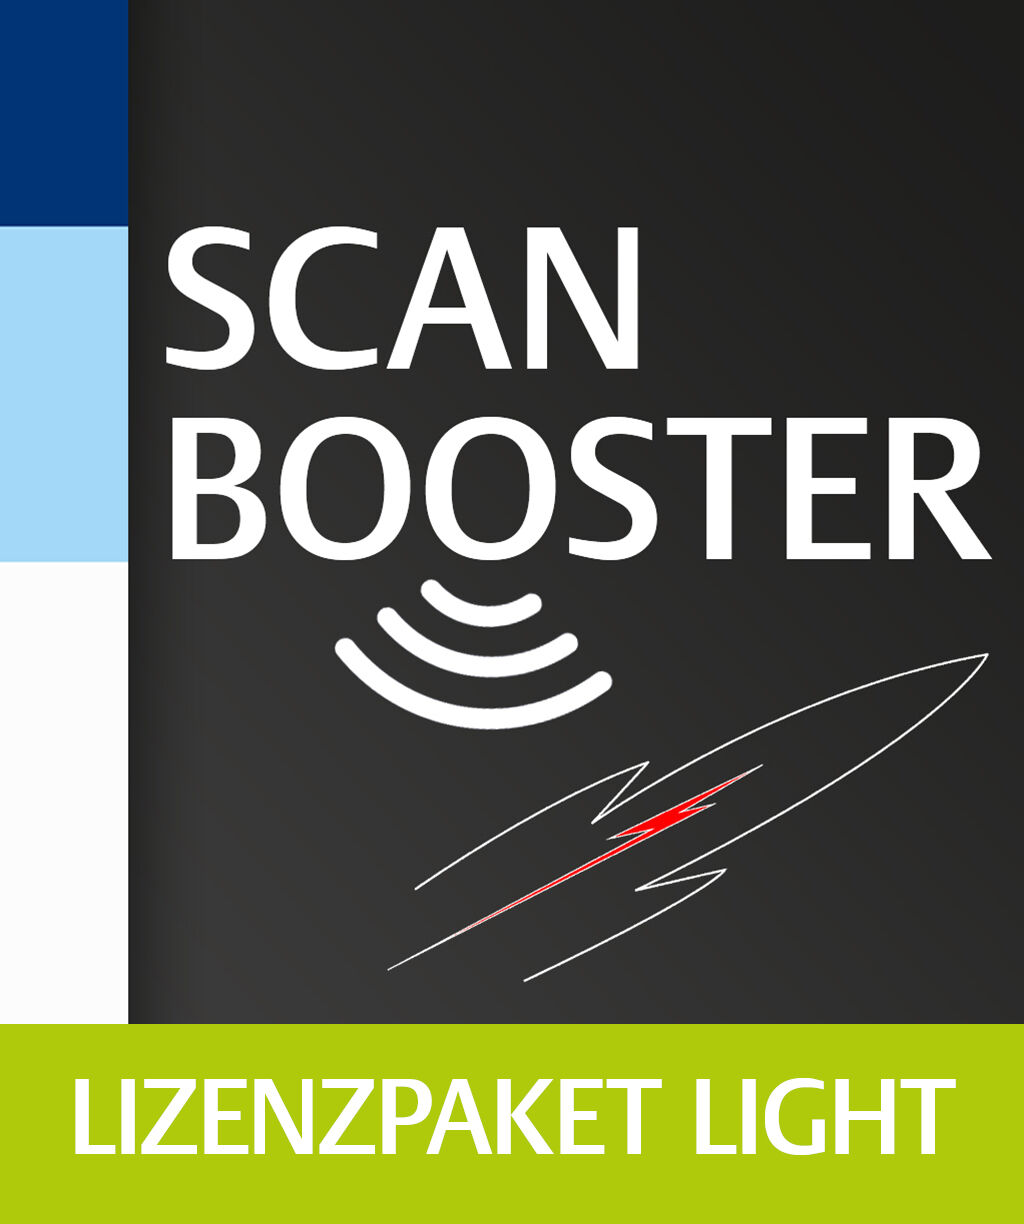 Scanbooster Ultraschall – Lizenzpaket LIGHT, 000000000316740101